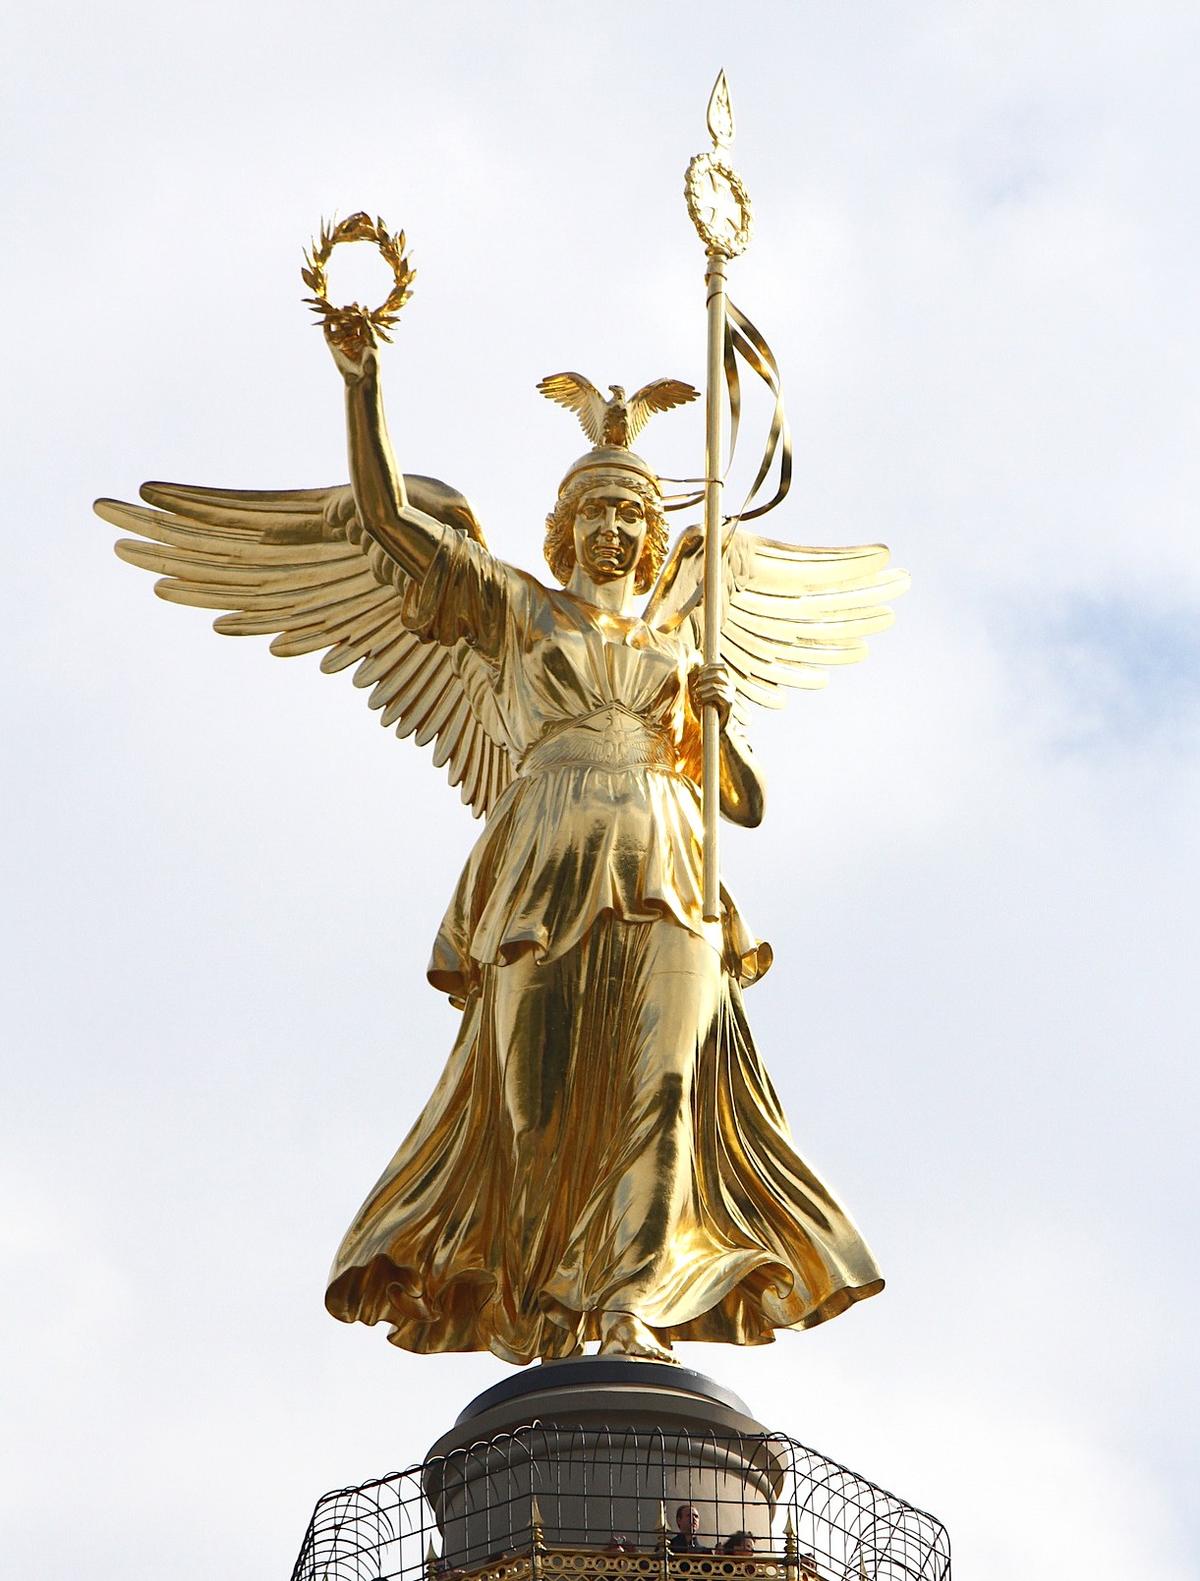 ©Pixabay | <a href="https://pixabay.com/photos/berlin-statue-golden-gold-woman-2581712/">Pixource</a>